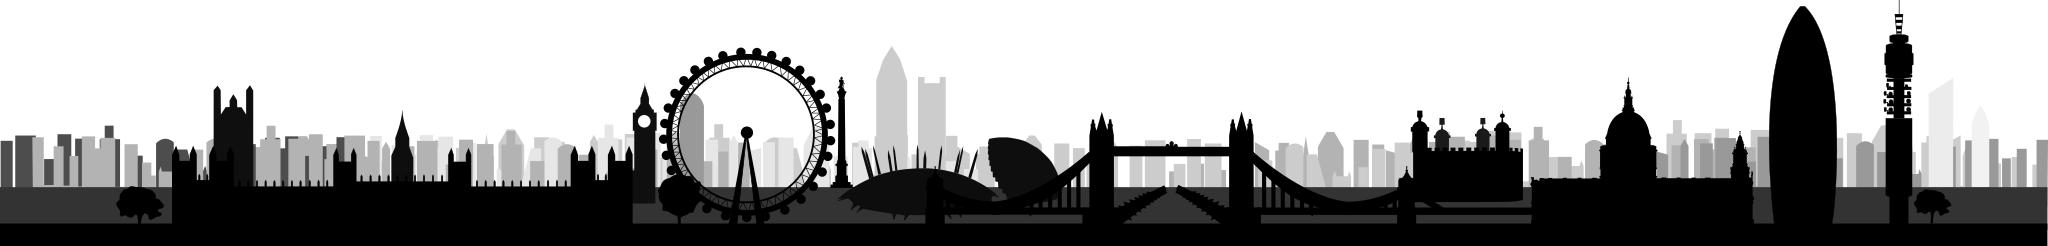 Download Free Images - london skyline svg